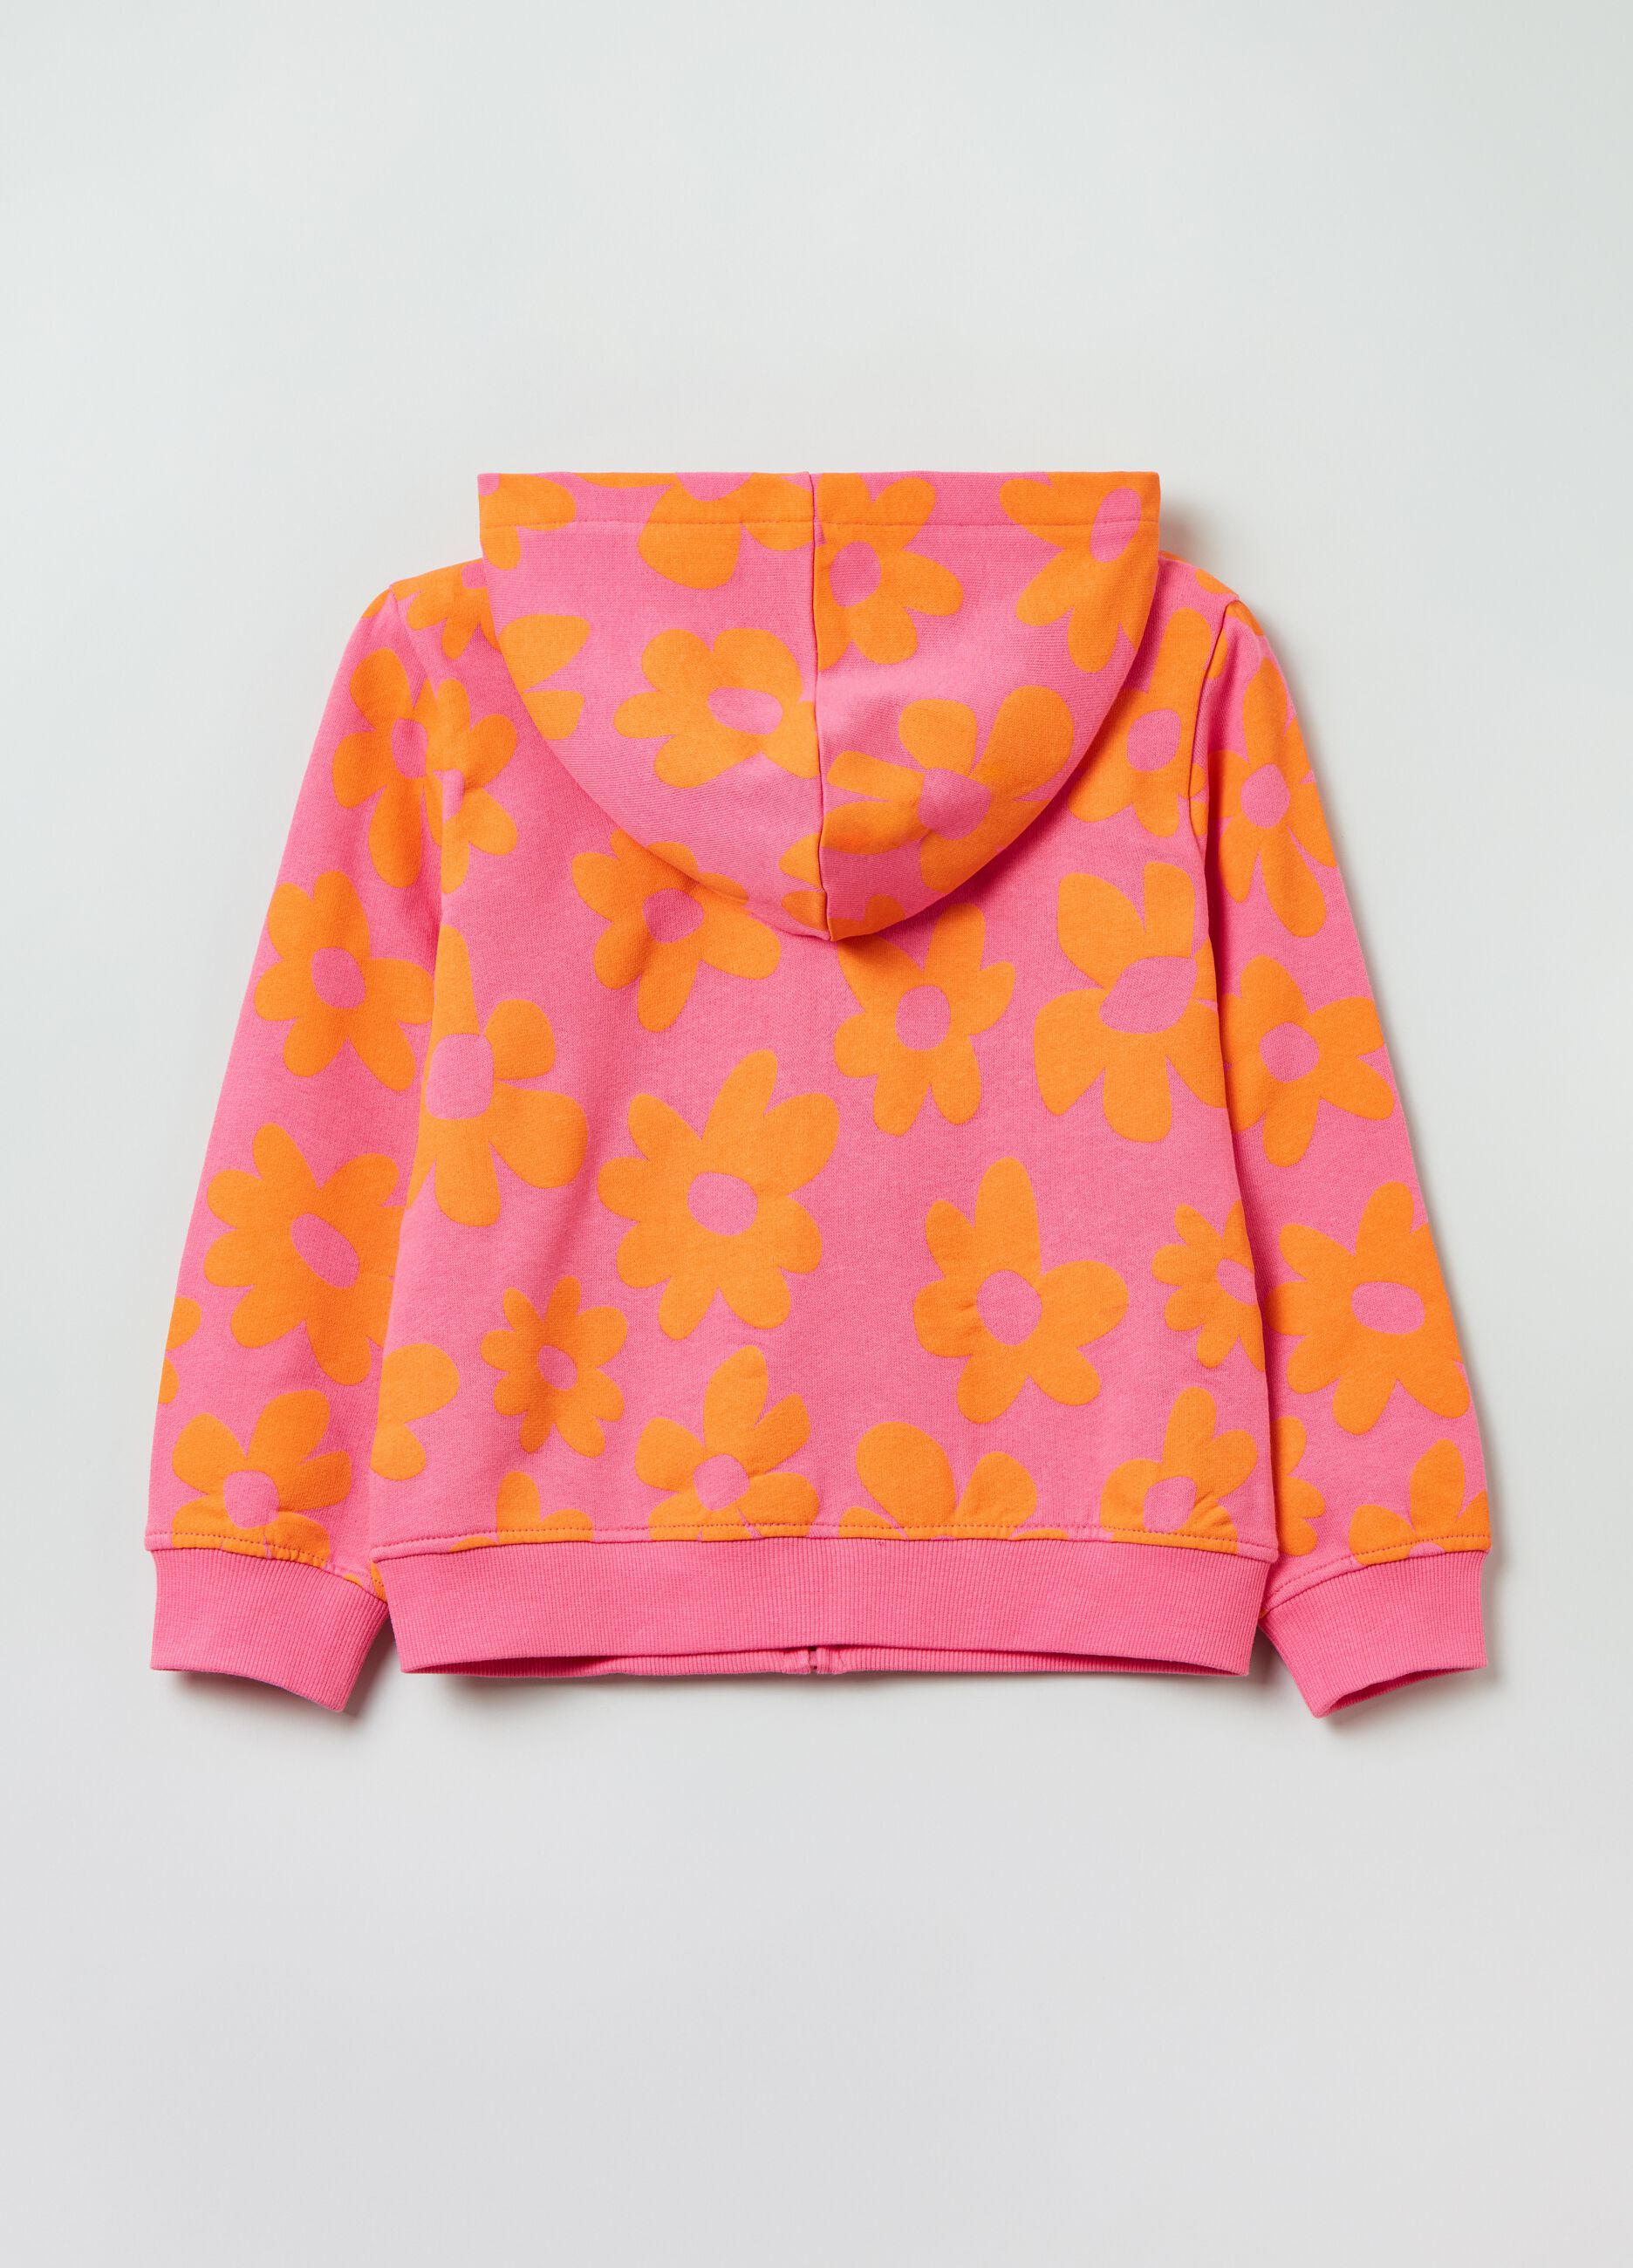 Cotton full-zip sweatshirt with print